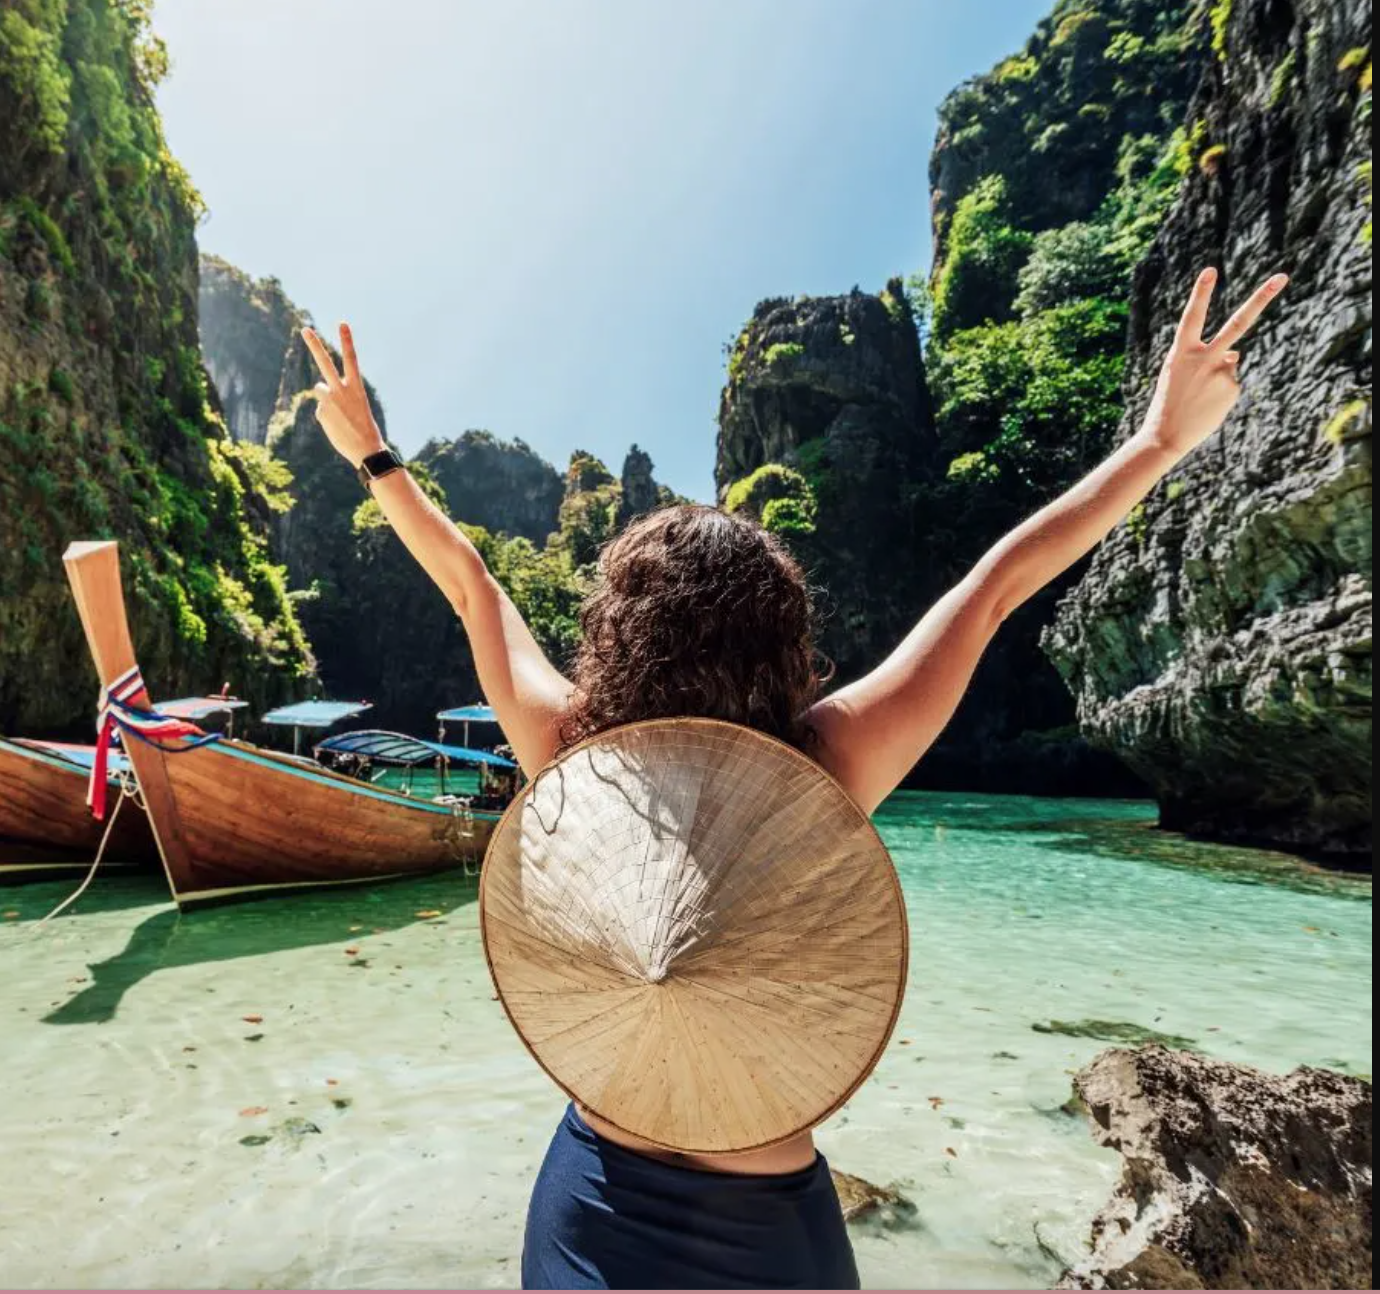 Cẩm nang du lịch Thái Lan hậu mở cửa: Điều khách Việt nên biết để có chuyến đi an toàn - Ảnh 3